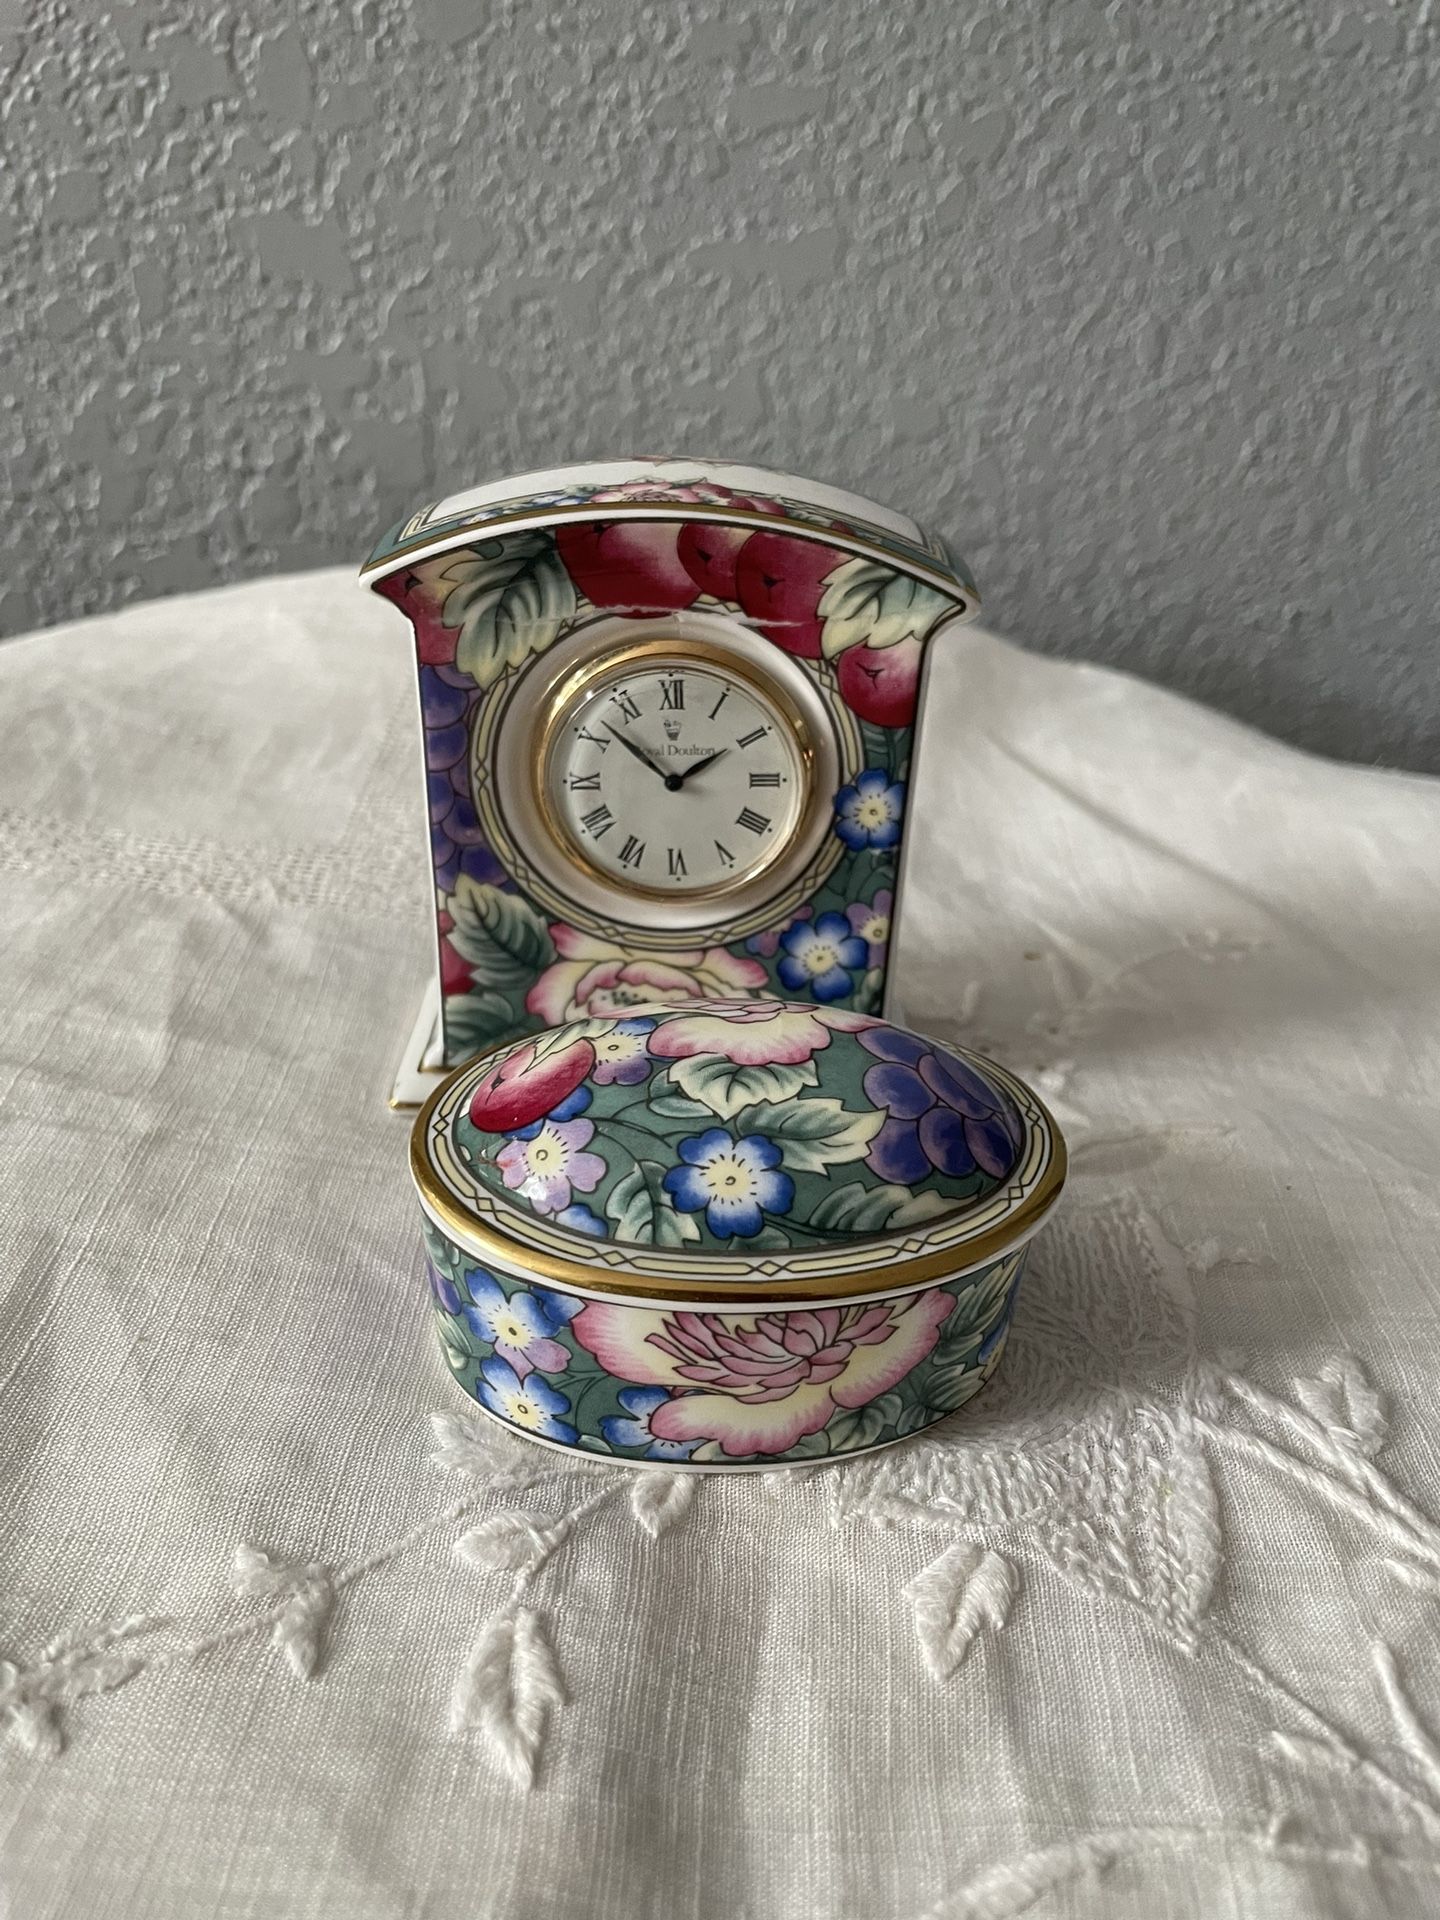 Royal Doulton trinket dish and matching clock 